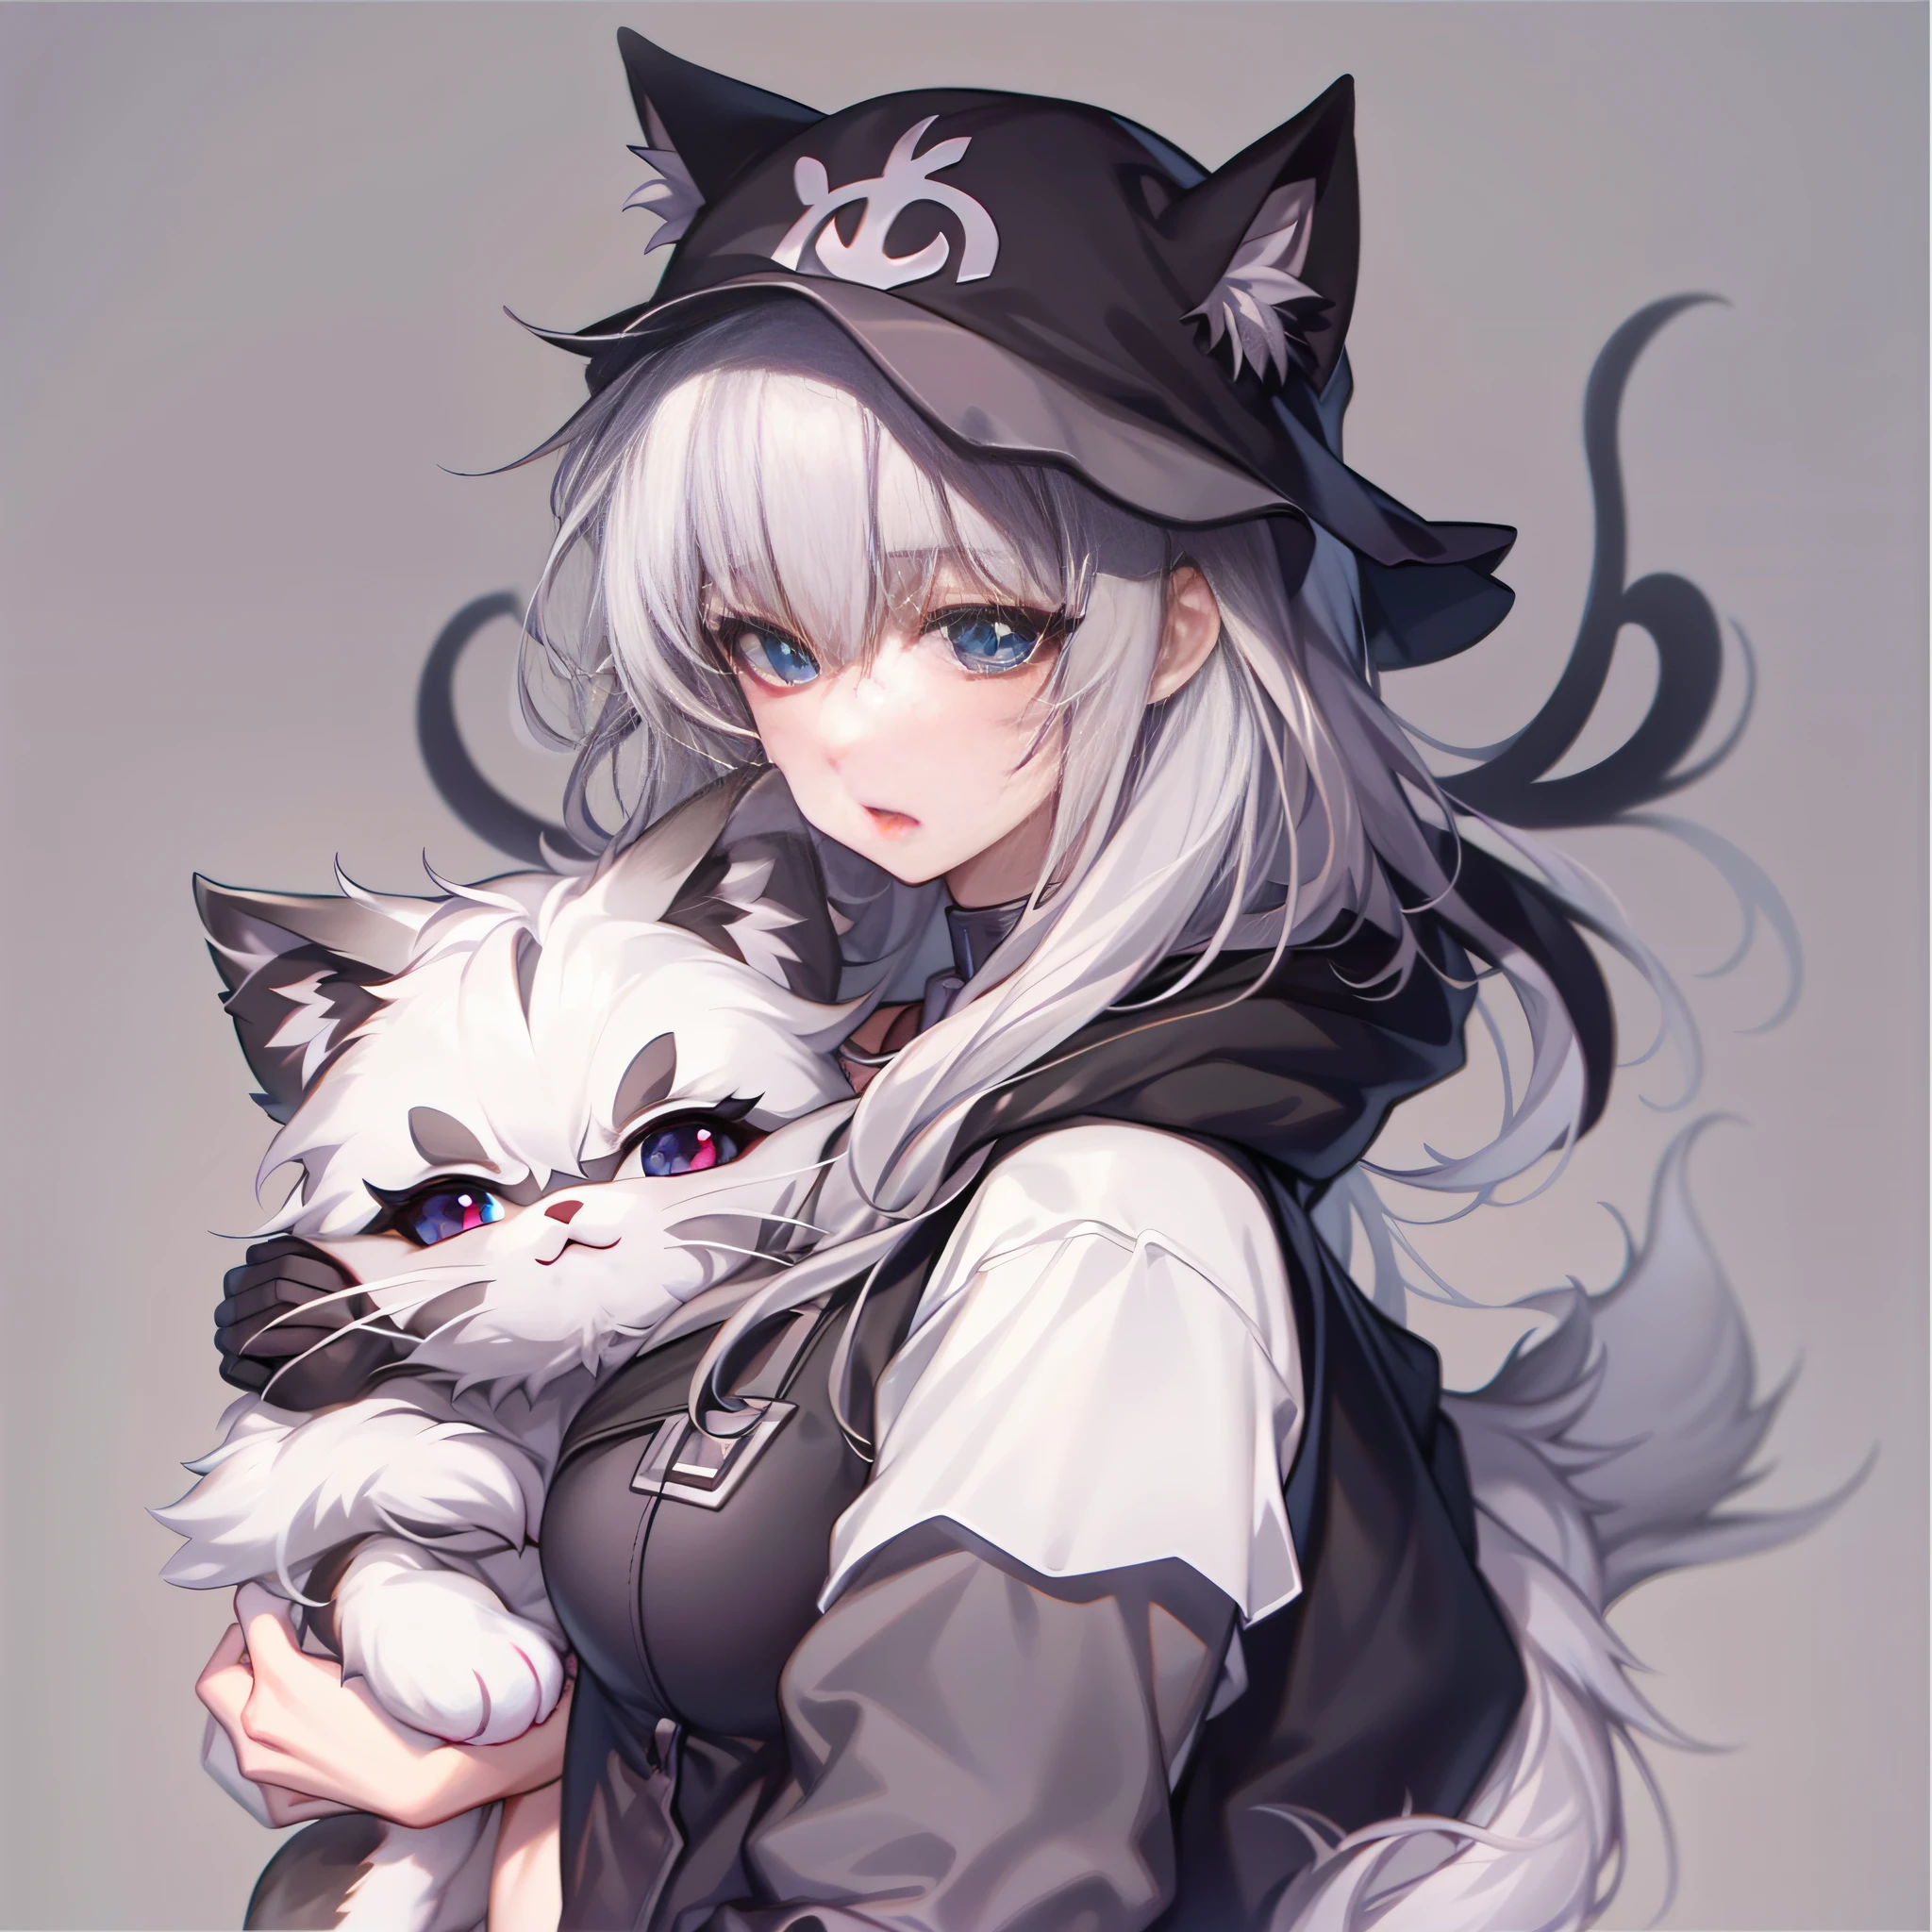 อะนิเมะสาว wearing black cat ears hat，เธออุ้มแมวไว้ในอ้อมแขนของเธอ, อะนิเมะเต้านมใหญ่，แคทวูแมนสีขาว, อะนิเมะสีขาวน่ารักแคทวูแมน, beautiful อะนิเมะแมวgirl, อะนิเมะสาวหูแมว, อะนิเมะแมว, Very beautiful อะนิเมะแมว girl, ผู้หญิงแมว, catgirl น่ารักมากสวยงามมาก, แมวสาว, แมวสาวที่น่าดึงดูด, Holo เป็นสาวหมาป่า, (อะนิเมะสาว), ในรูปแบบอนิเมะ